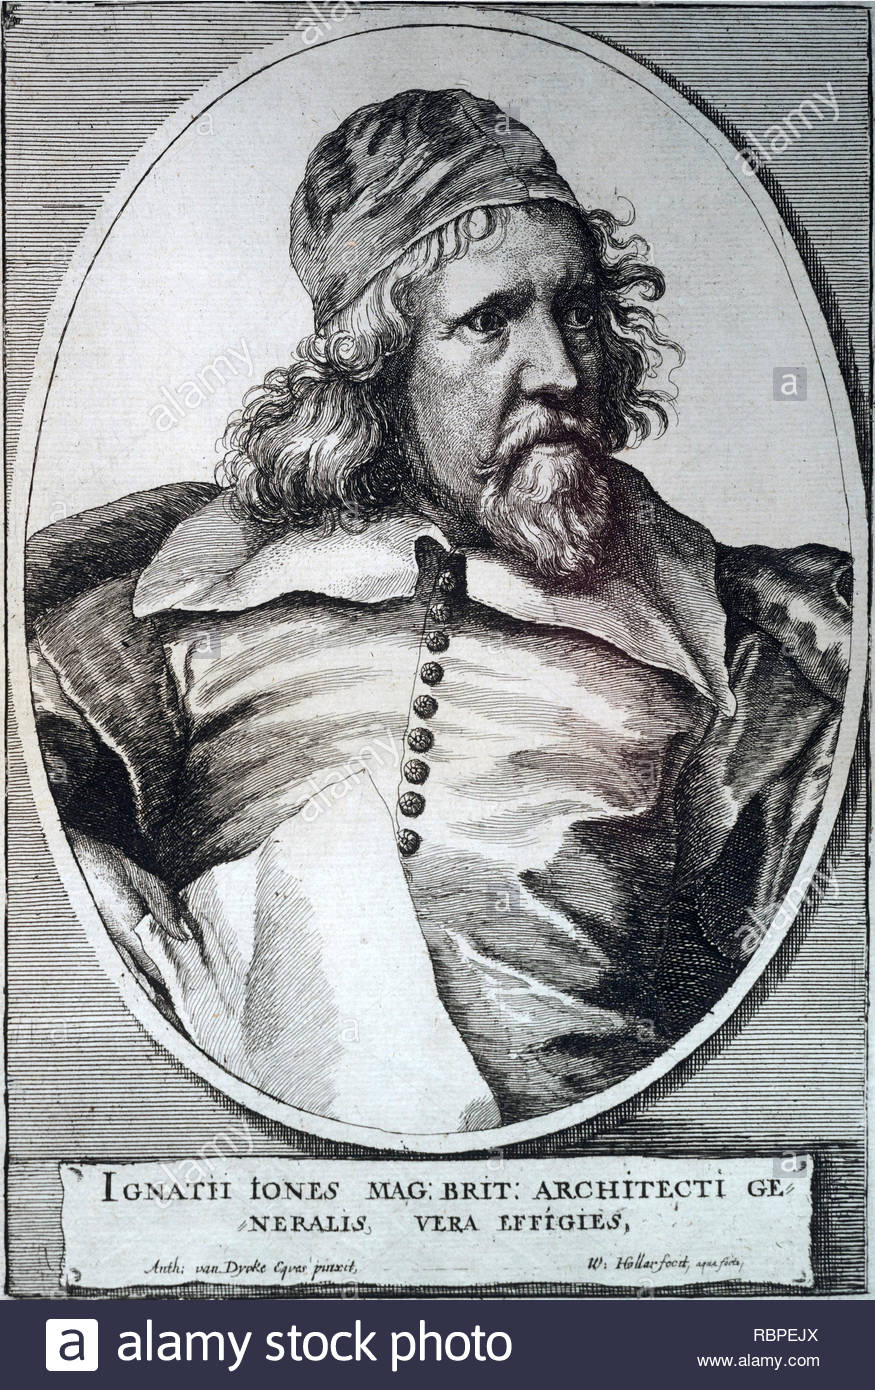 Inigo Jones ritratto, 1573 - 1652, è stato il primo importante architetto inglese nel primo periodo moderno, e il primo a impiegare le regole vitruviano di proporzione e simmetria nei suoi edifici, attacco da incisore boemo Wenceslaus Hollar da 1600s Foto Stock